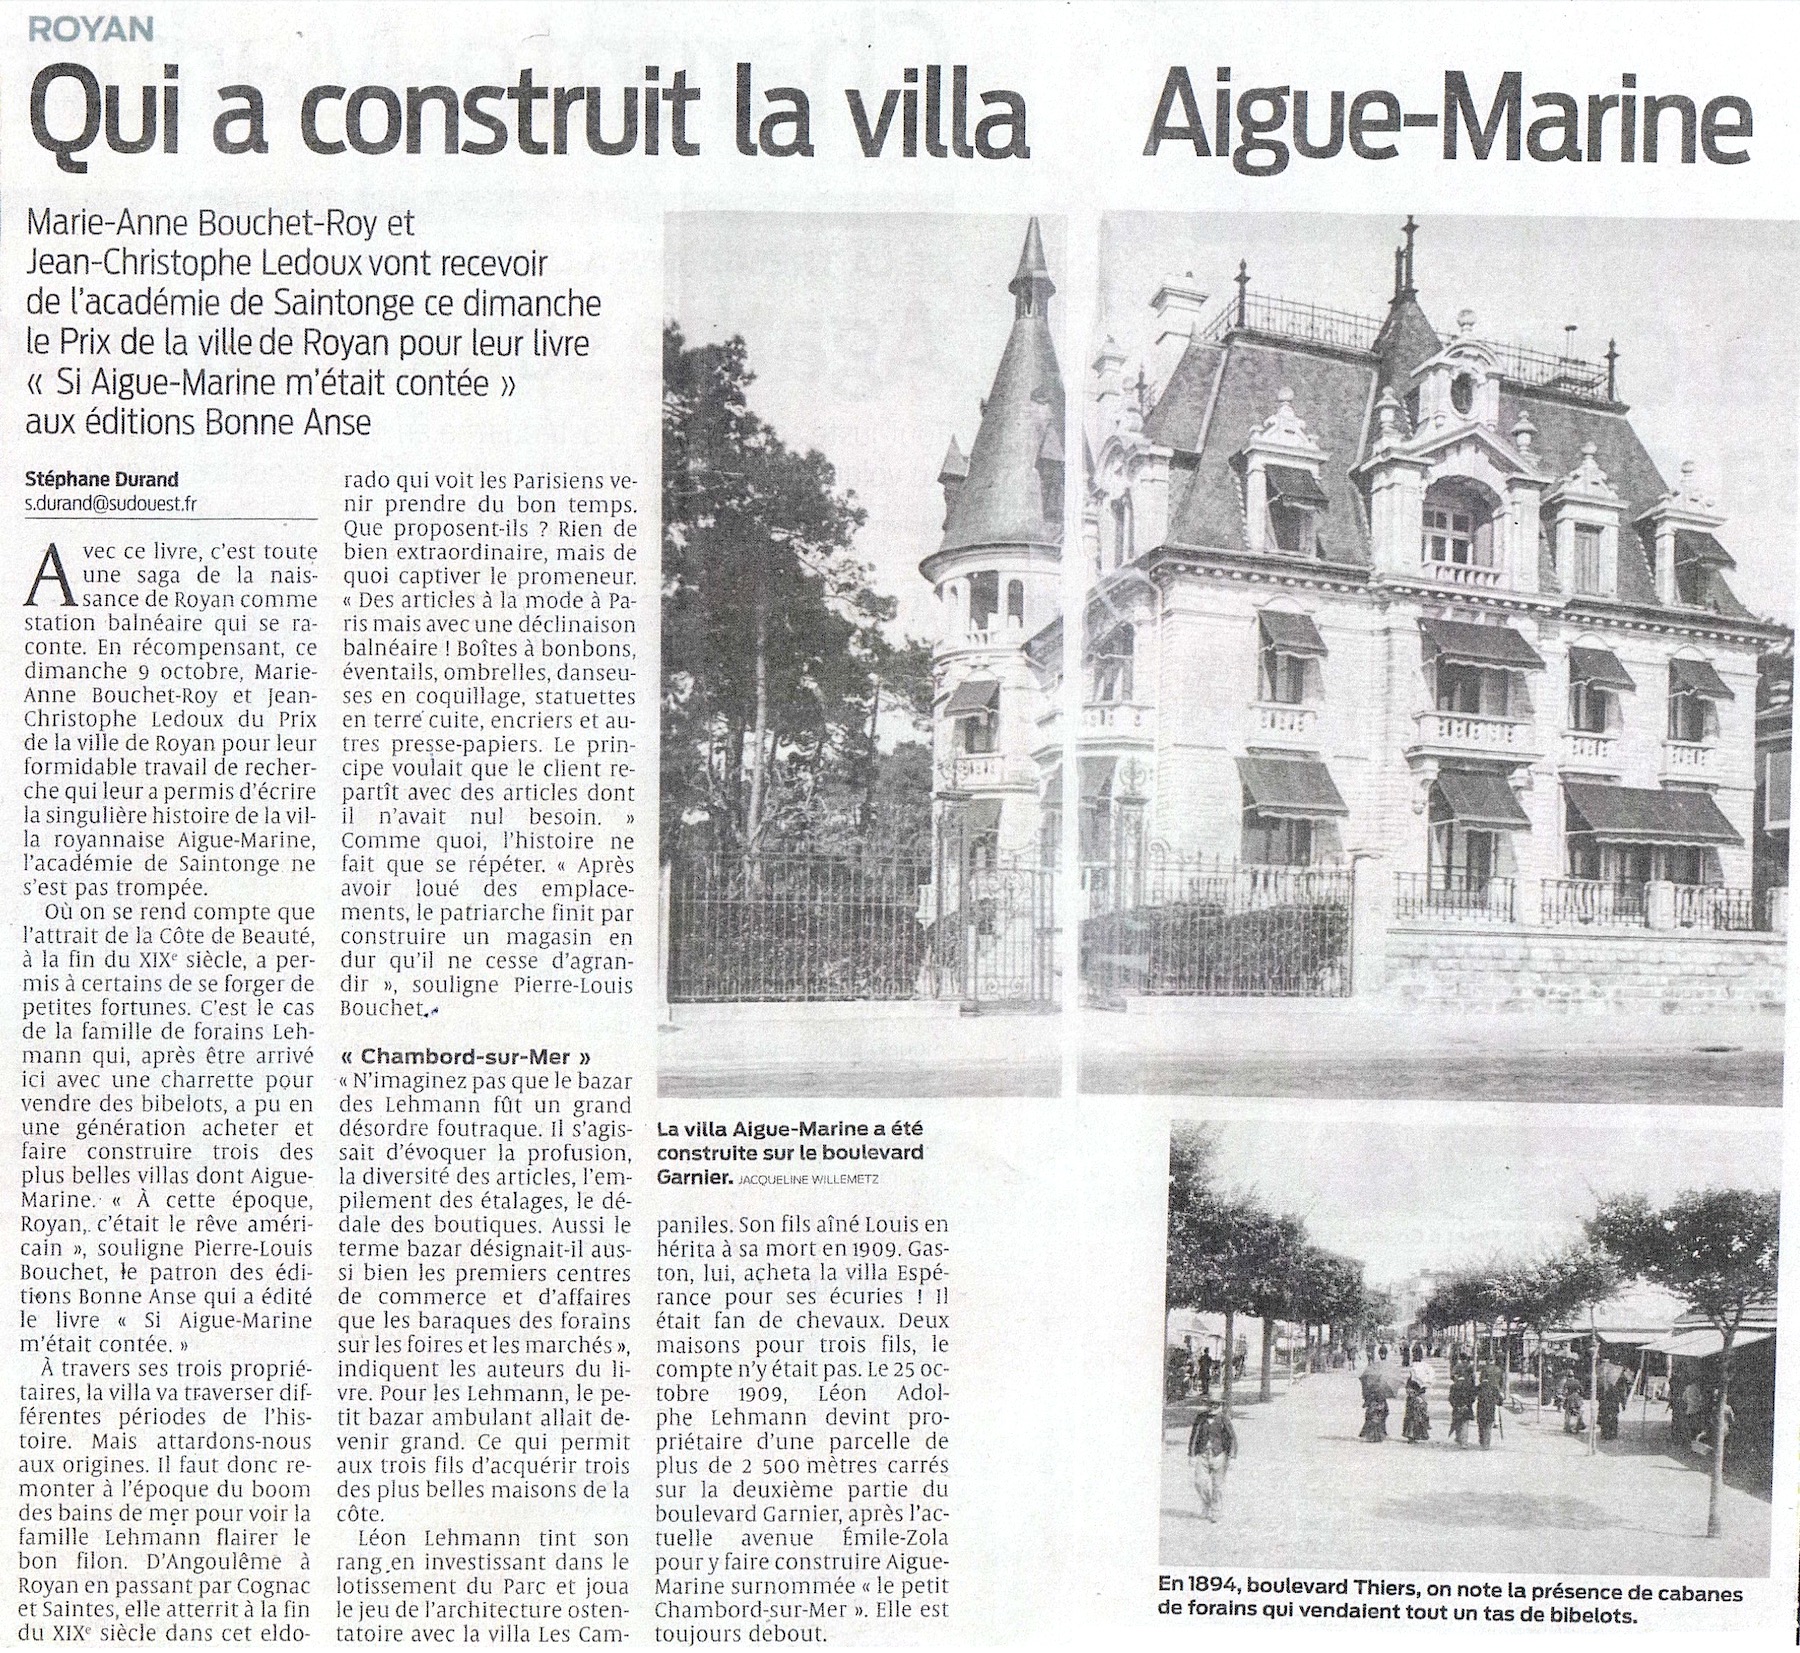 Sud Ouest, 09/10/2022 : Qui a construit la villa Aigue-Marine